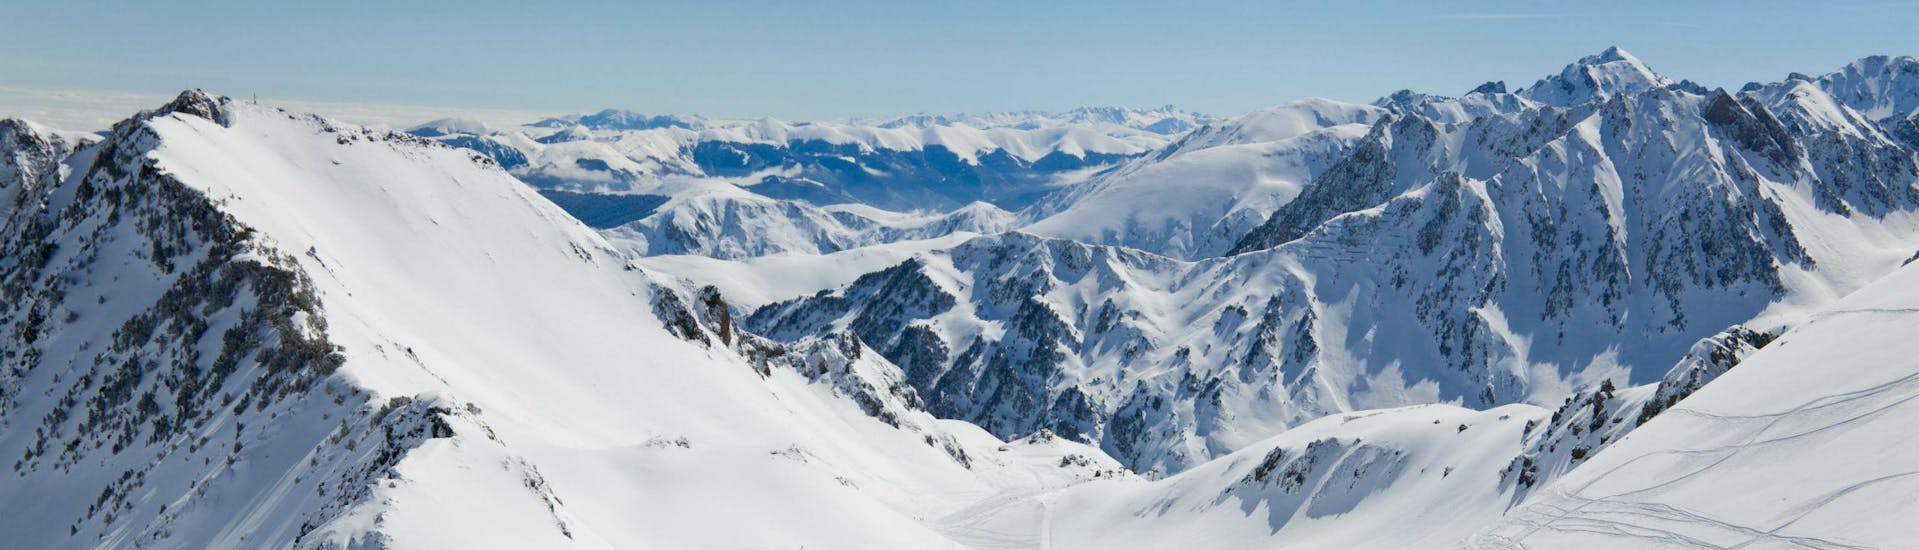 Un snowboardeur admire la vue magnifique sur les Pyrénées enneigées depuis l'une des pistes de La Mongie - Tourmalet, où les écoles de ski locales proposent un vaste choix de cours de ski.